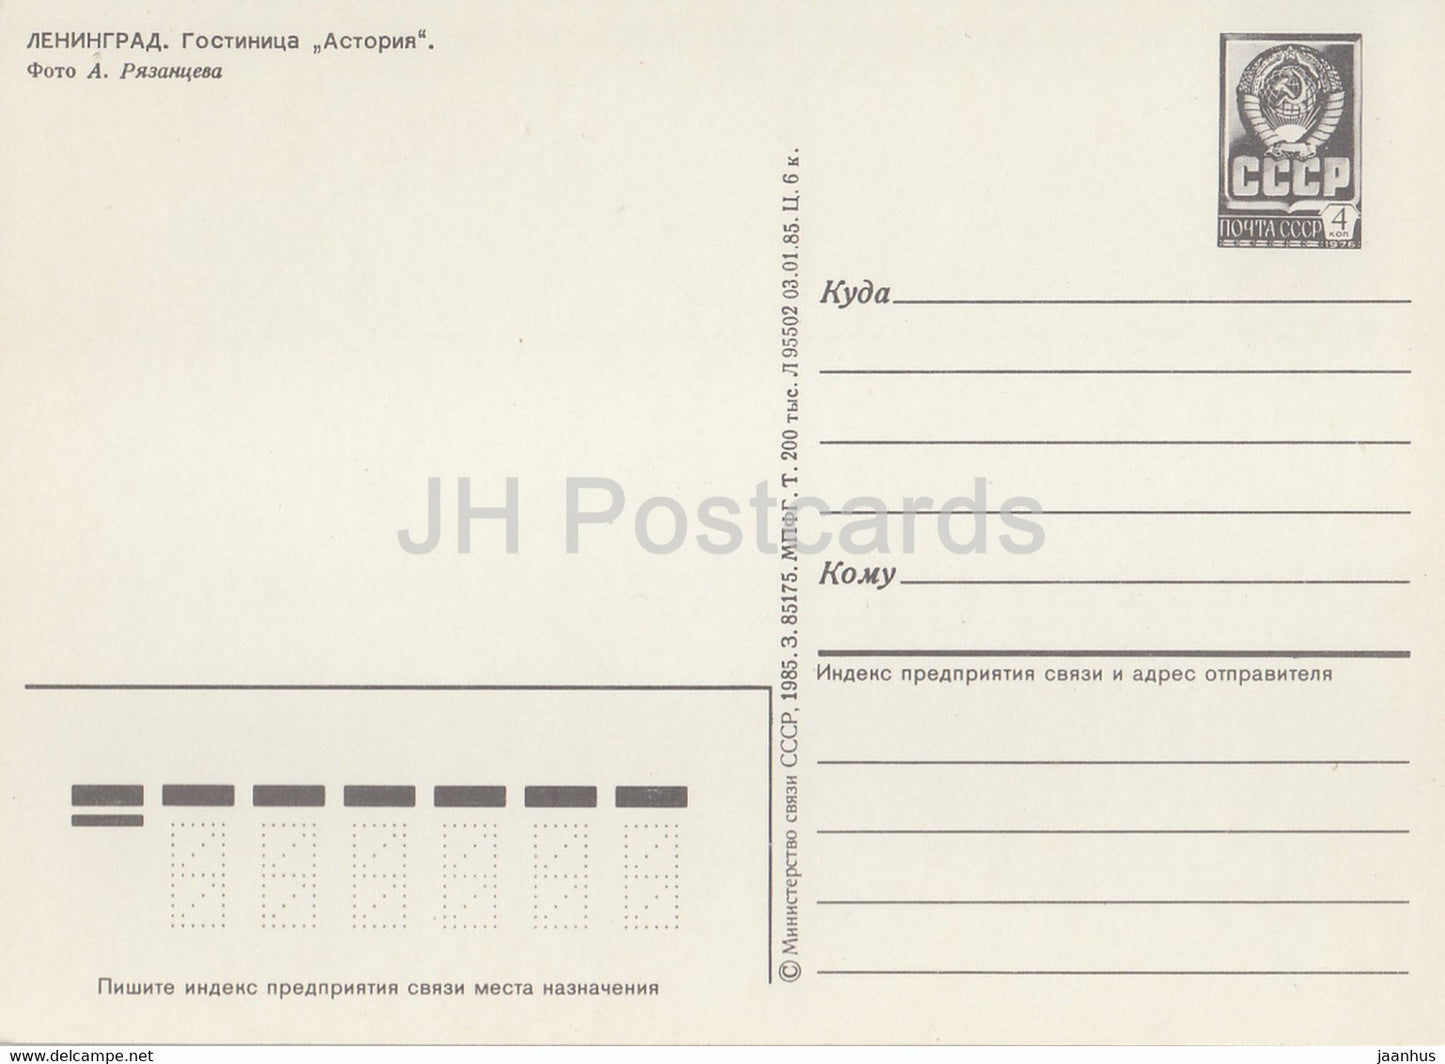 Leningrad - Saint-Pétersbourg - hôtel Astoria - bus Ikarus - entier postal - 1985 - Russie URSS - inutilisé